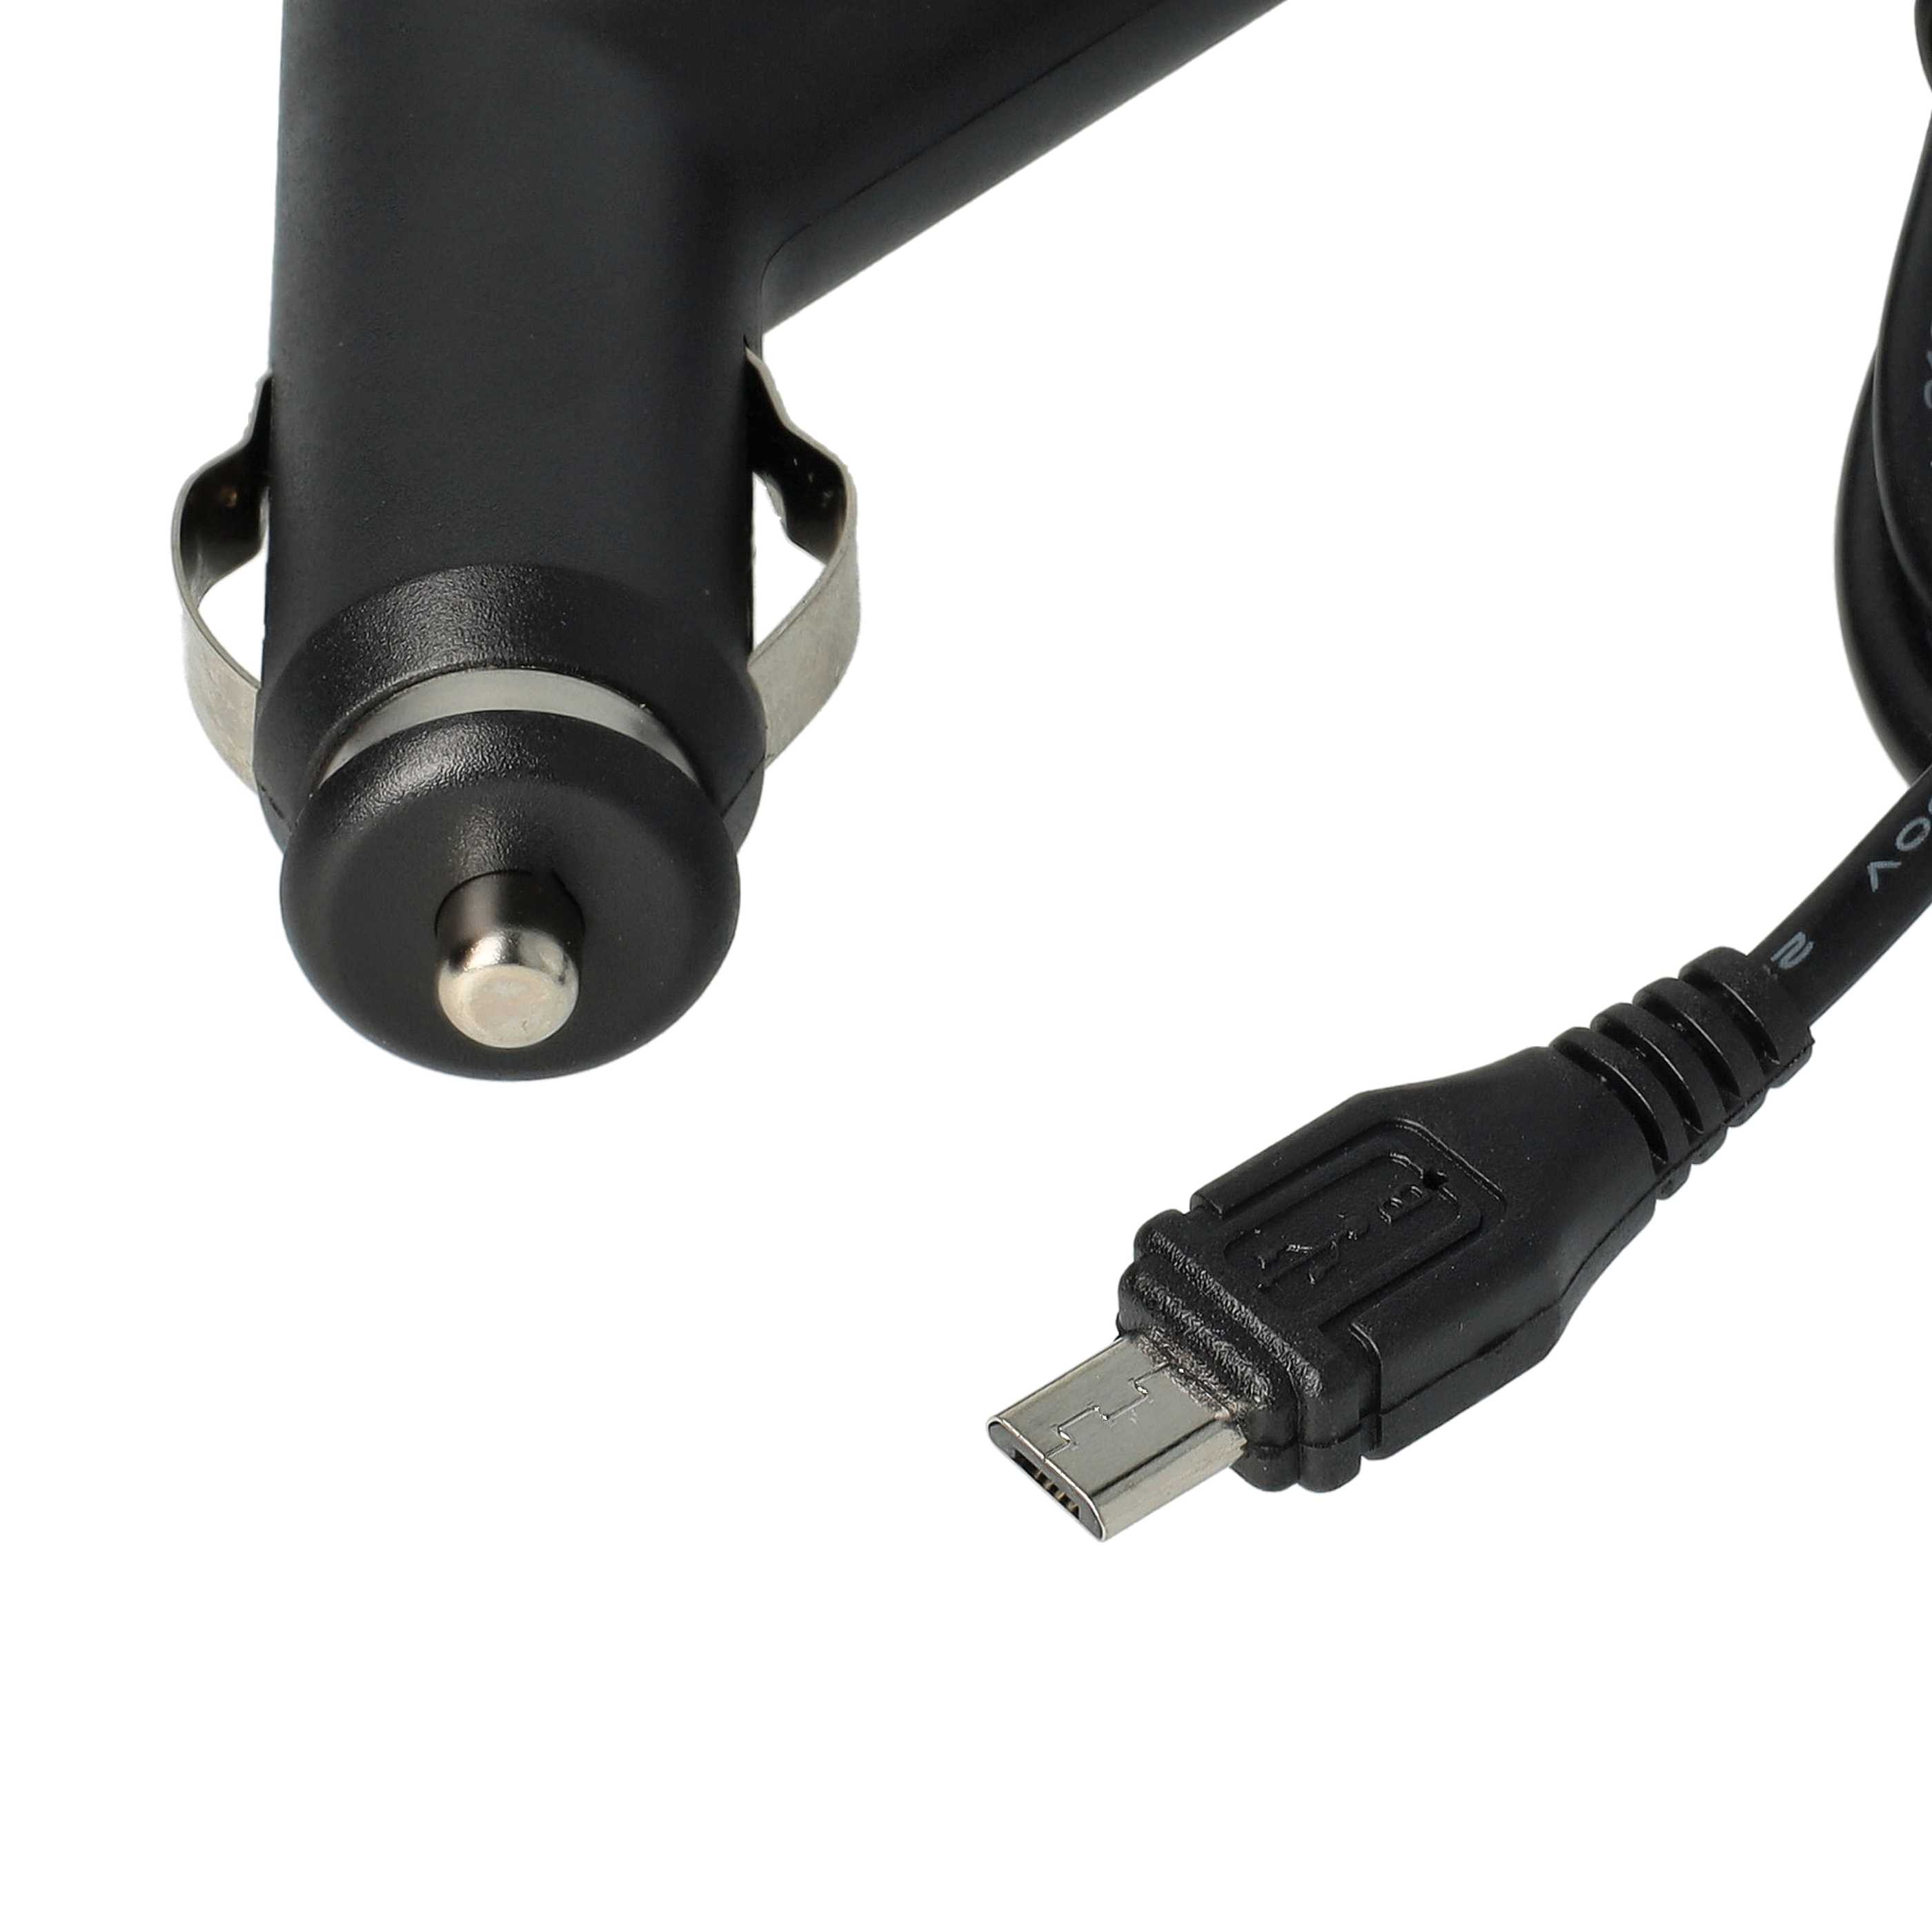 Ładowarka samochodowa Micro USB do urządzeń np. smartfona, nawigacji GPS C150 Bea-fon - 2,0 A